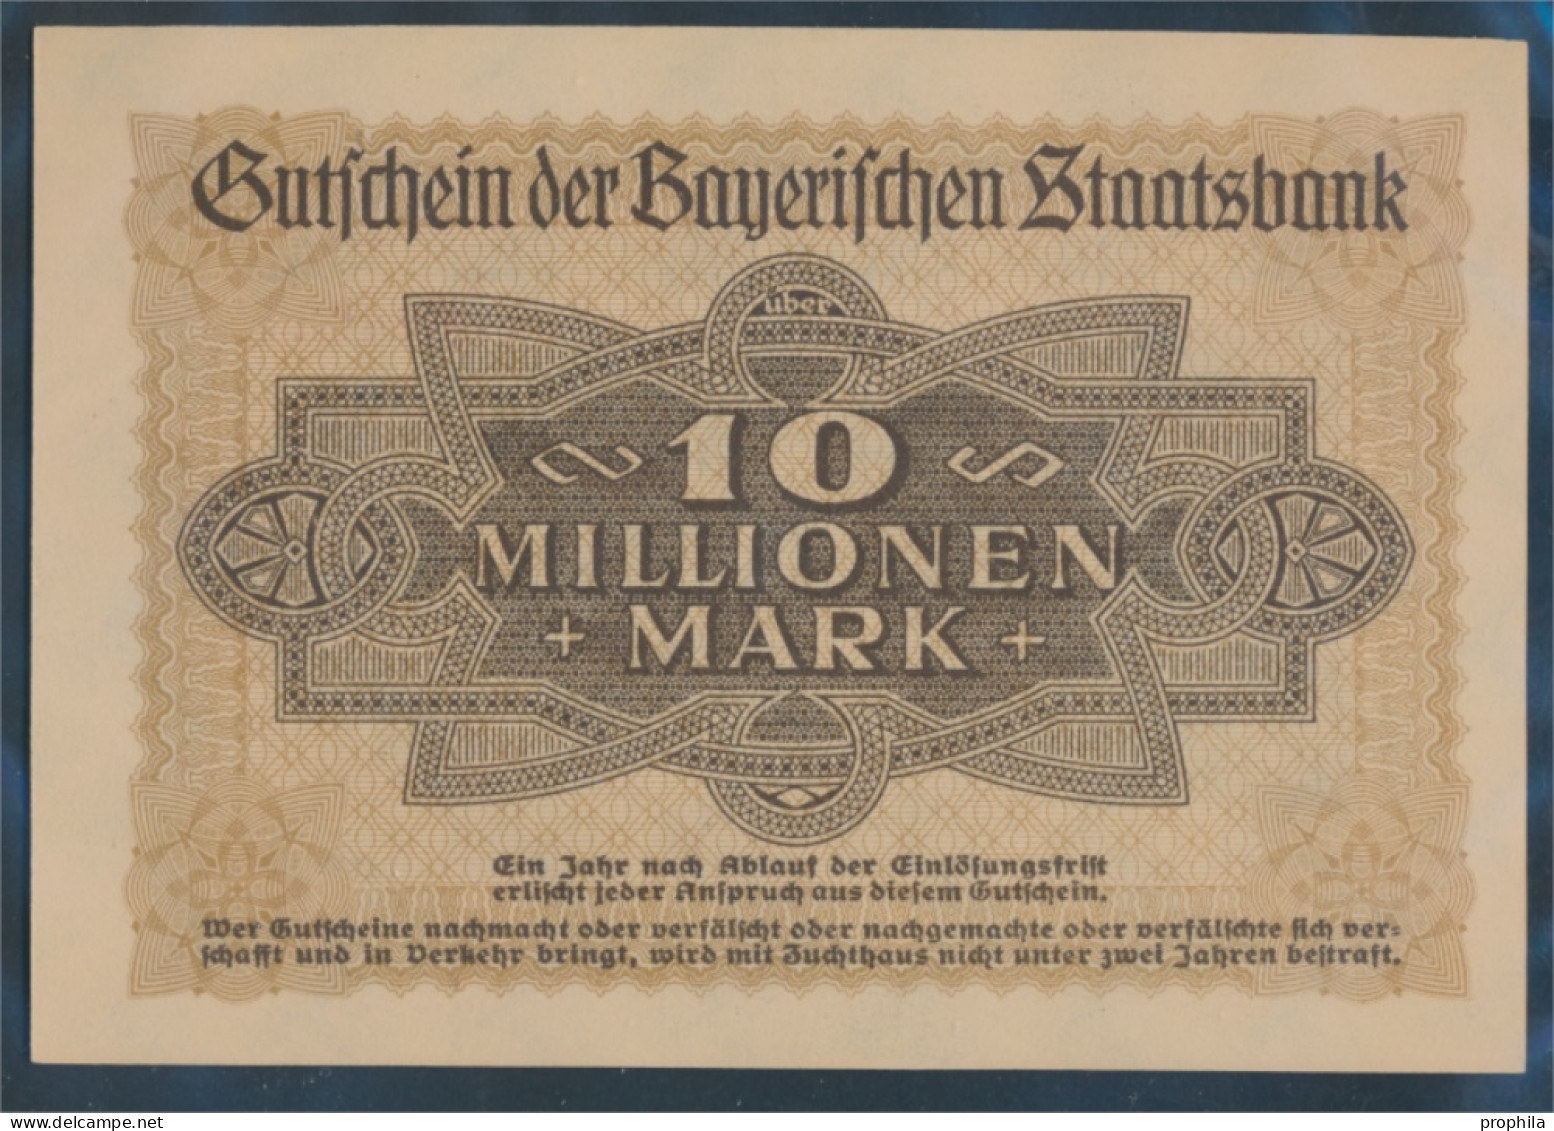 Bayern Inflationsgeld Bayerische Staatsbank Bankfrisch 1923 10 Millionen Mark (10288396 - 10 Millionen Mark